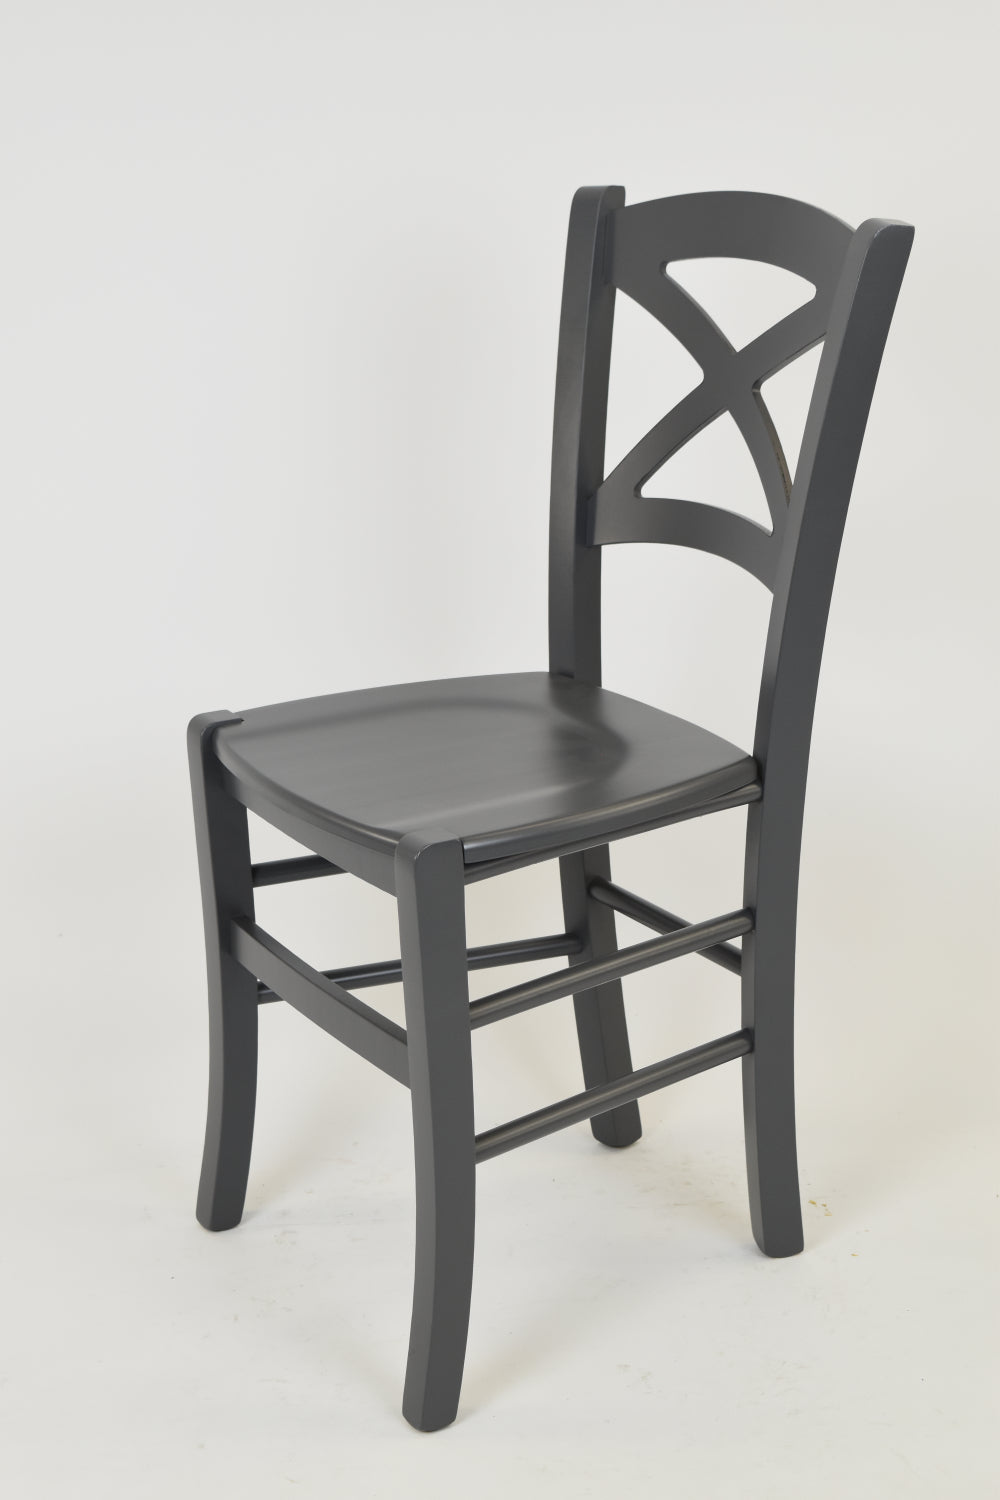 Tommychairs - Set 4 sillas de Cocina y Comedor Cross, Estructura en Madera de Haya lacada Color Gris Oscuro y Asiento en Madera